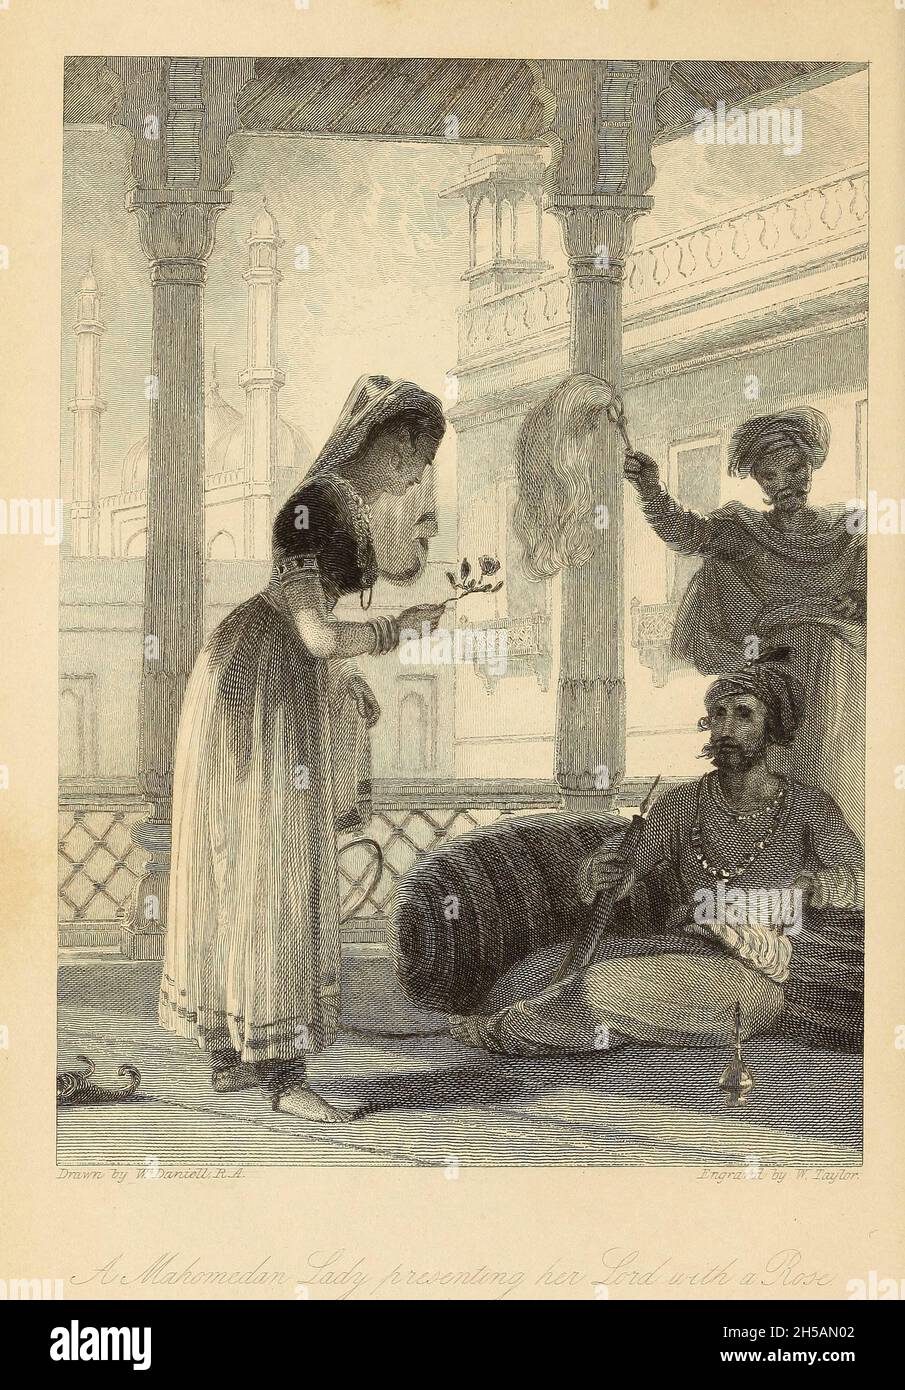 Une dame de Mohammadan présentant son Seigneur Une Rose du livre « The Oriental Annual, or, Scenes in India » du révérend Hobart Caunter publié par Edward Bull, Londres 1838 gravures de dessins de William Daniell Banque D'Images